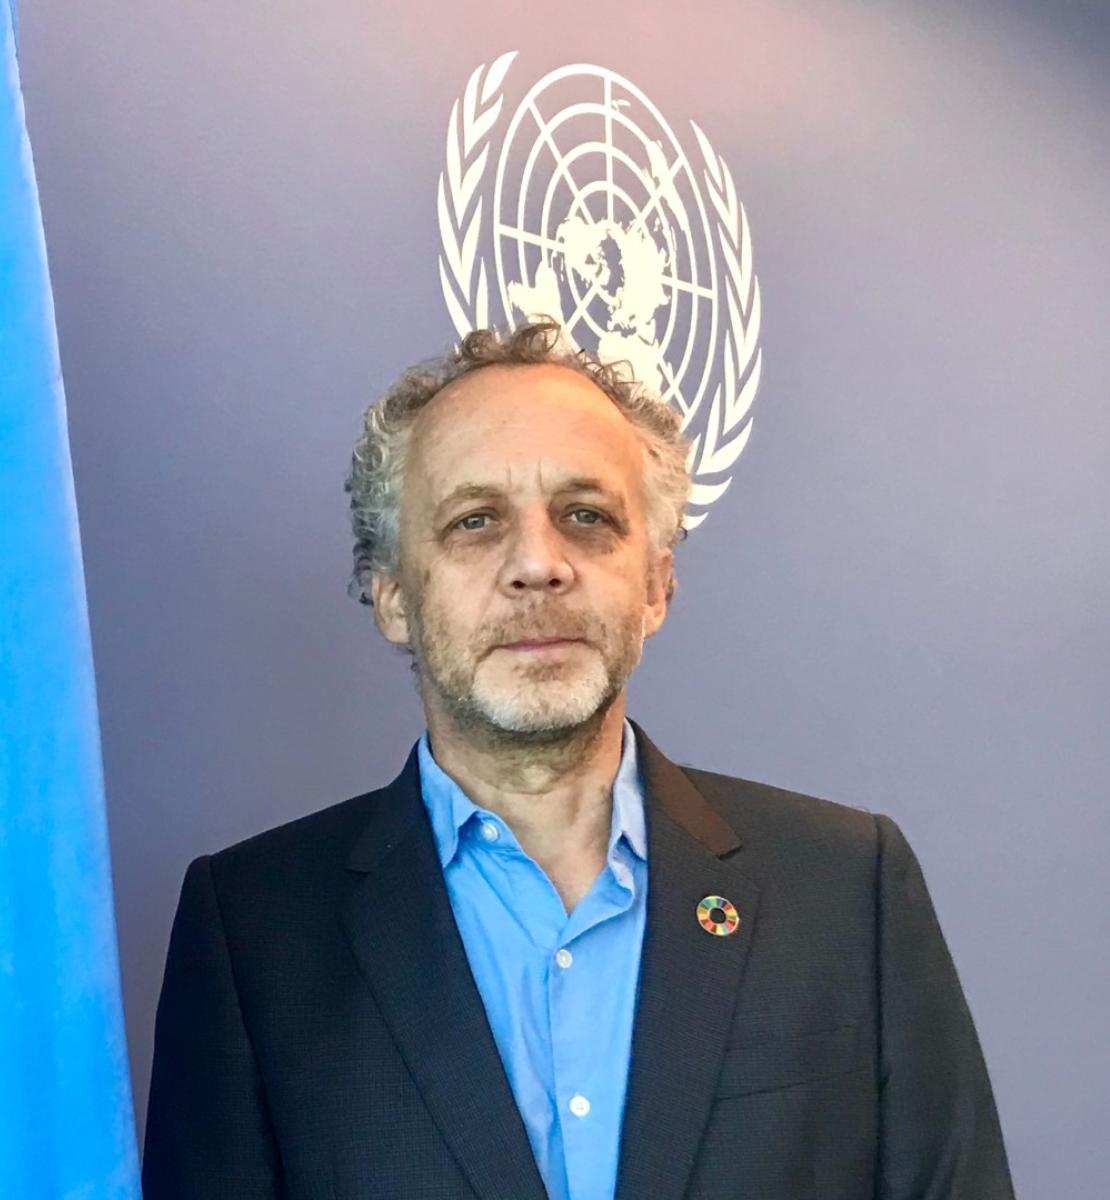 Joseph Scheuer, le nouveau Coordonnateur résident des Nations Unies au Cambodge, se tient devant le drapeau bleu de l'ONU, face caméra.